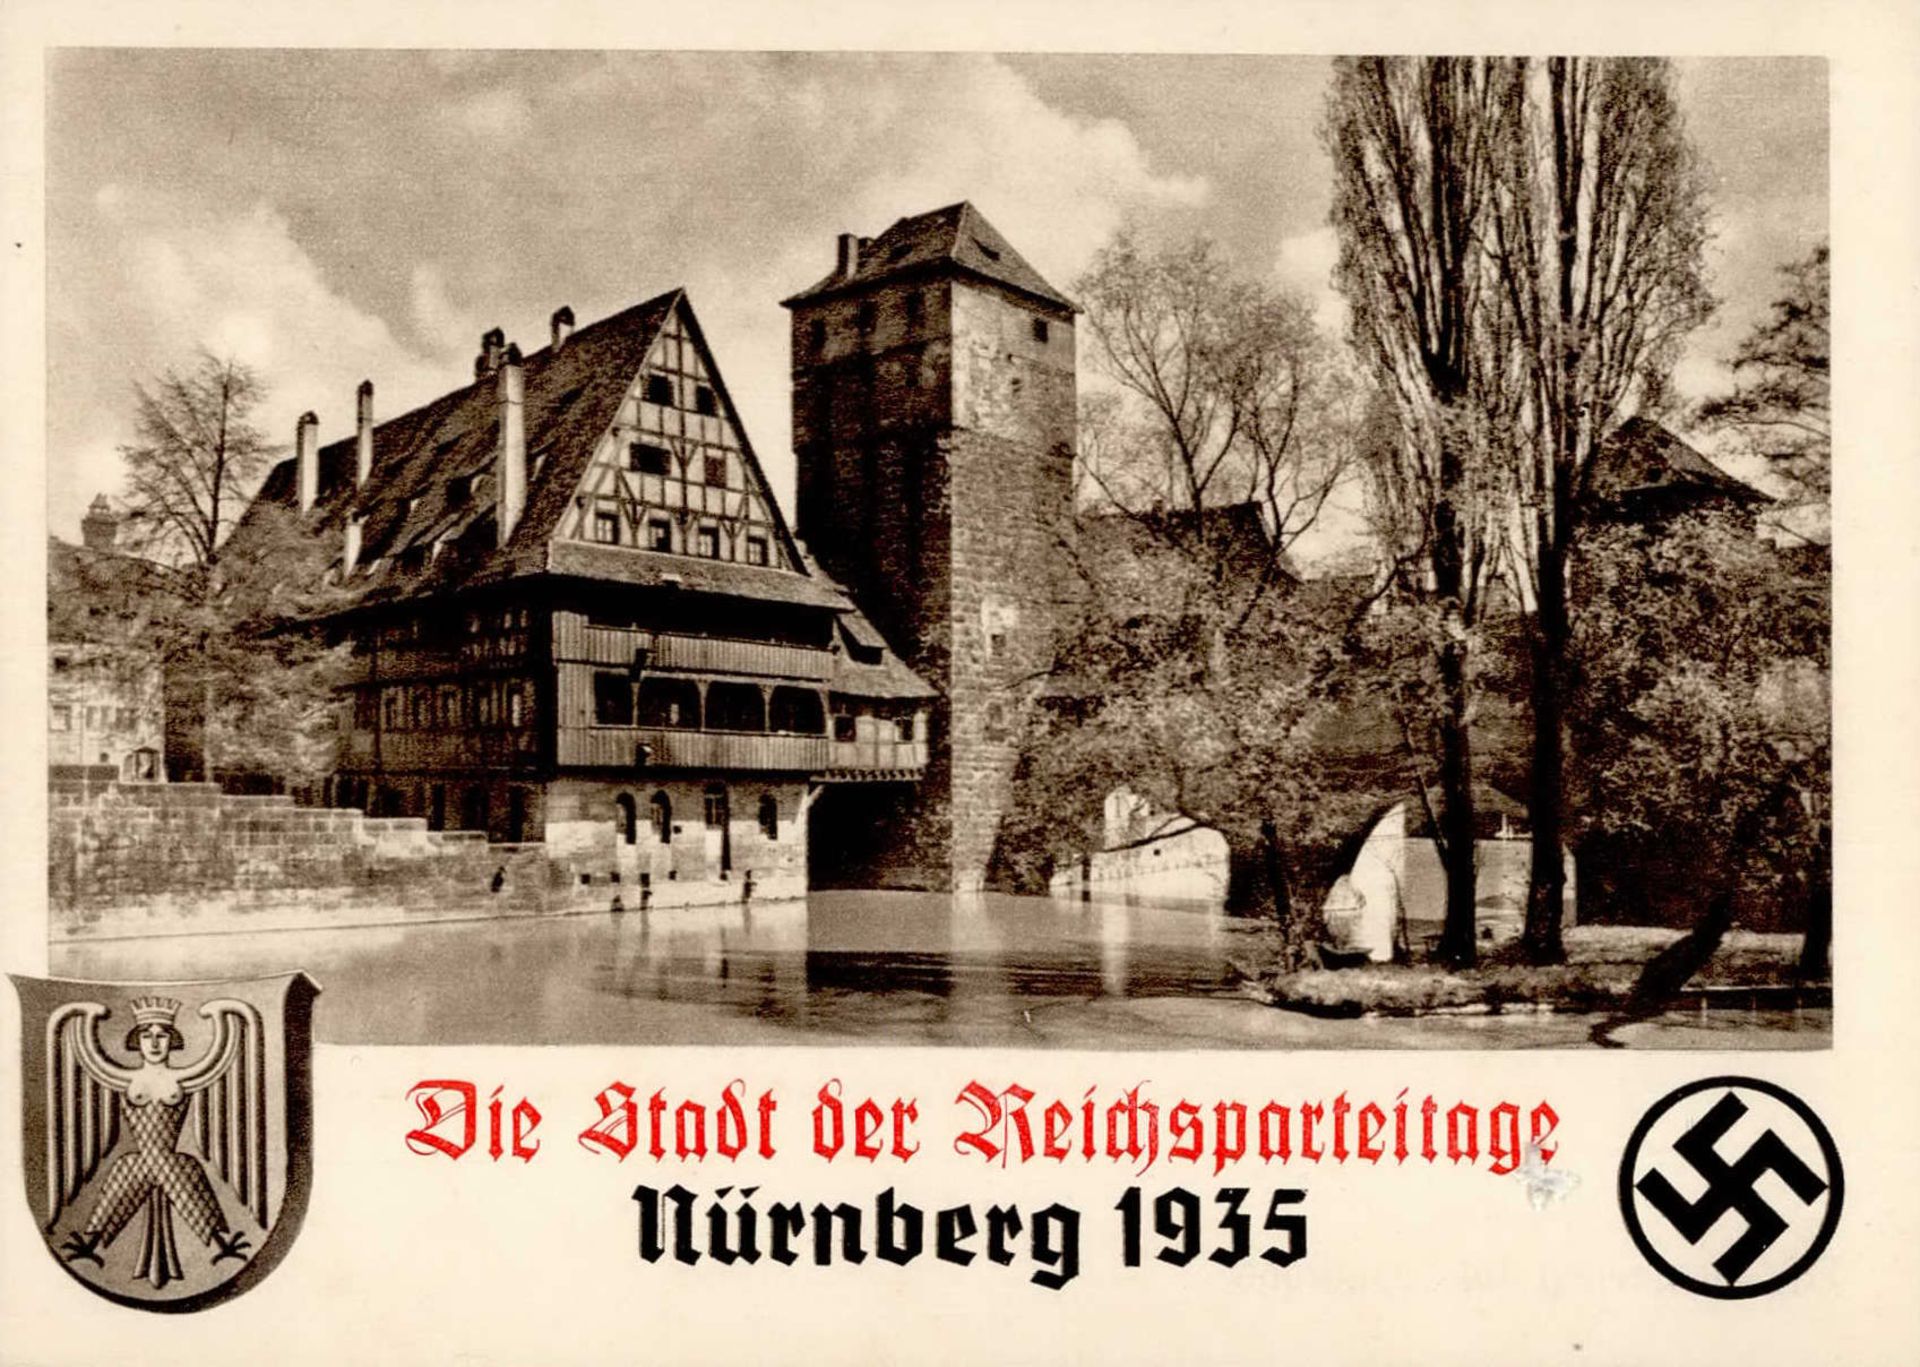 REICHSPARTEITAG NÜRNBERG 1935 WK II - Nr. 3 der Henkersteg mit Weinstadel I